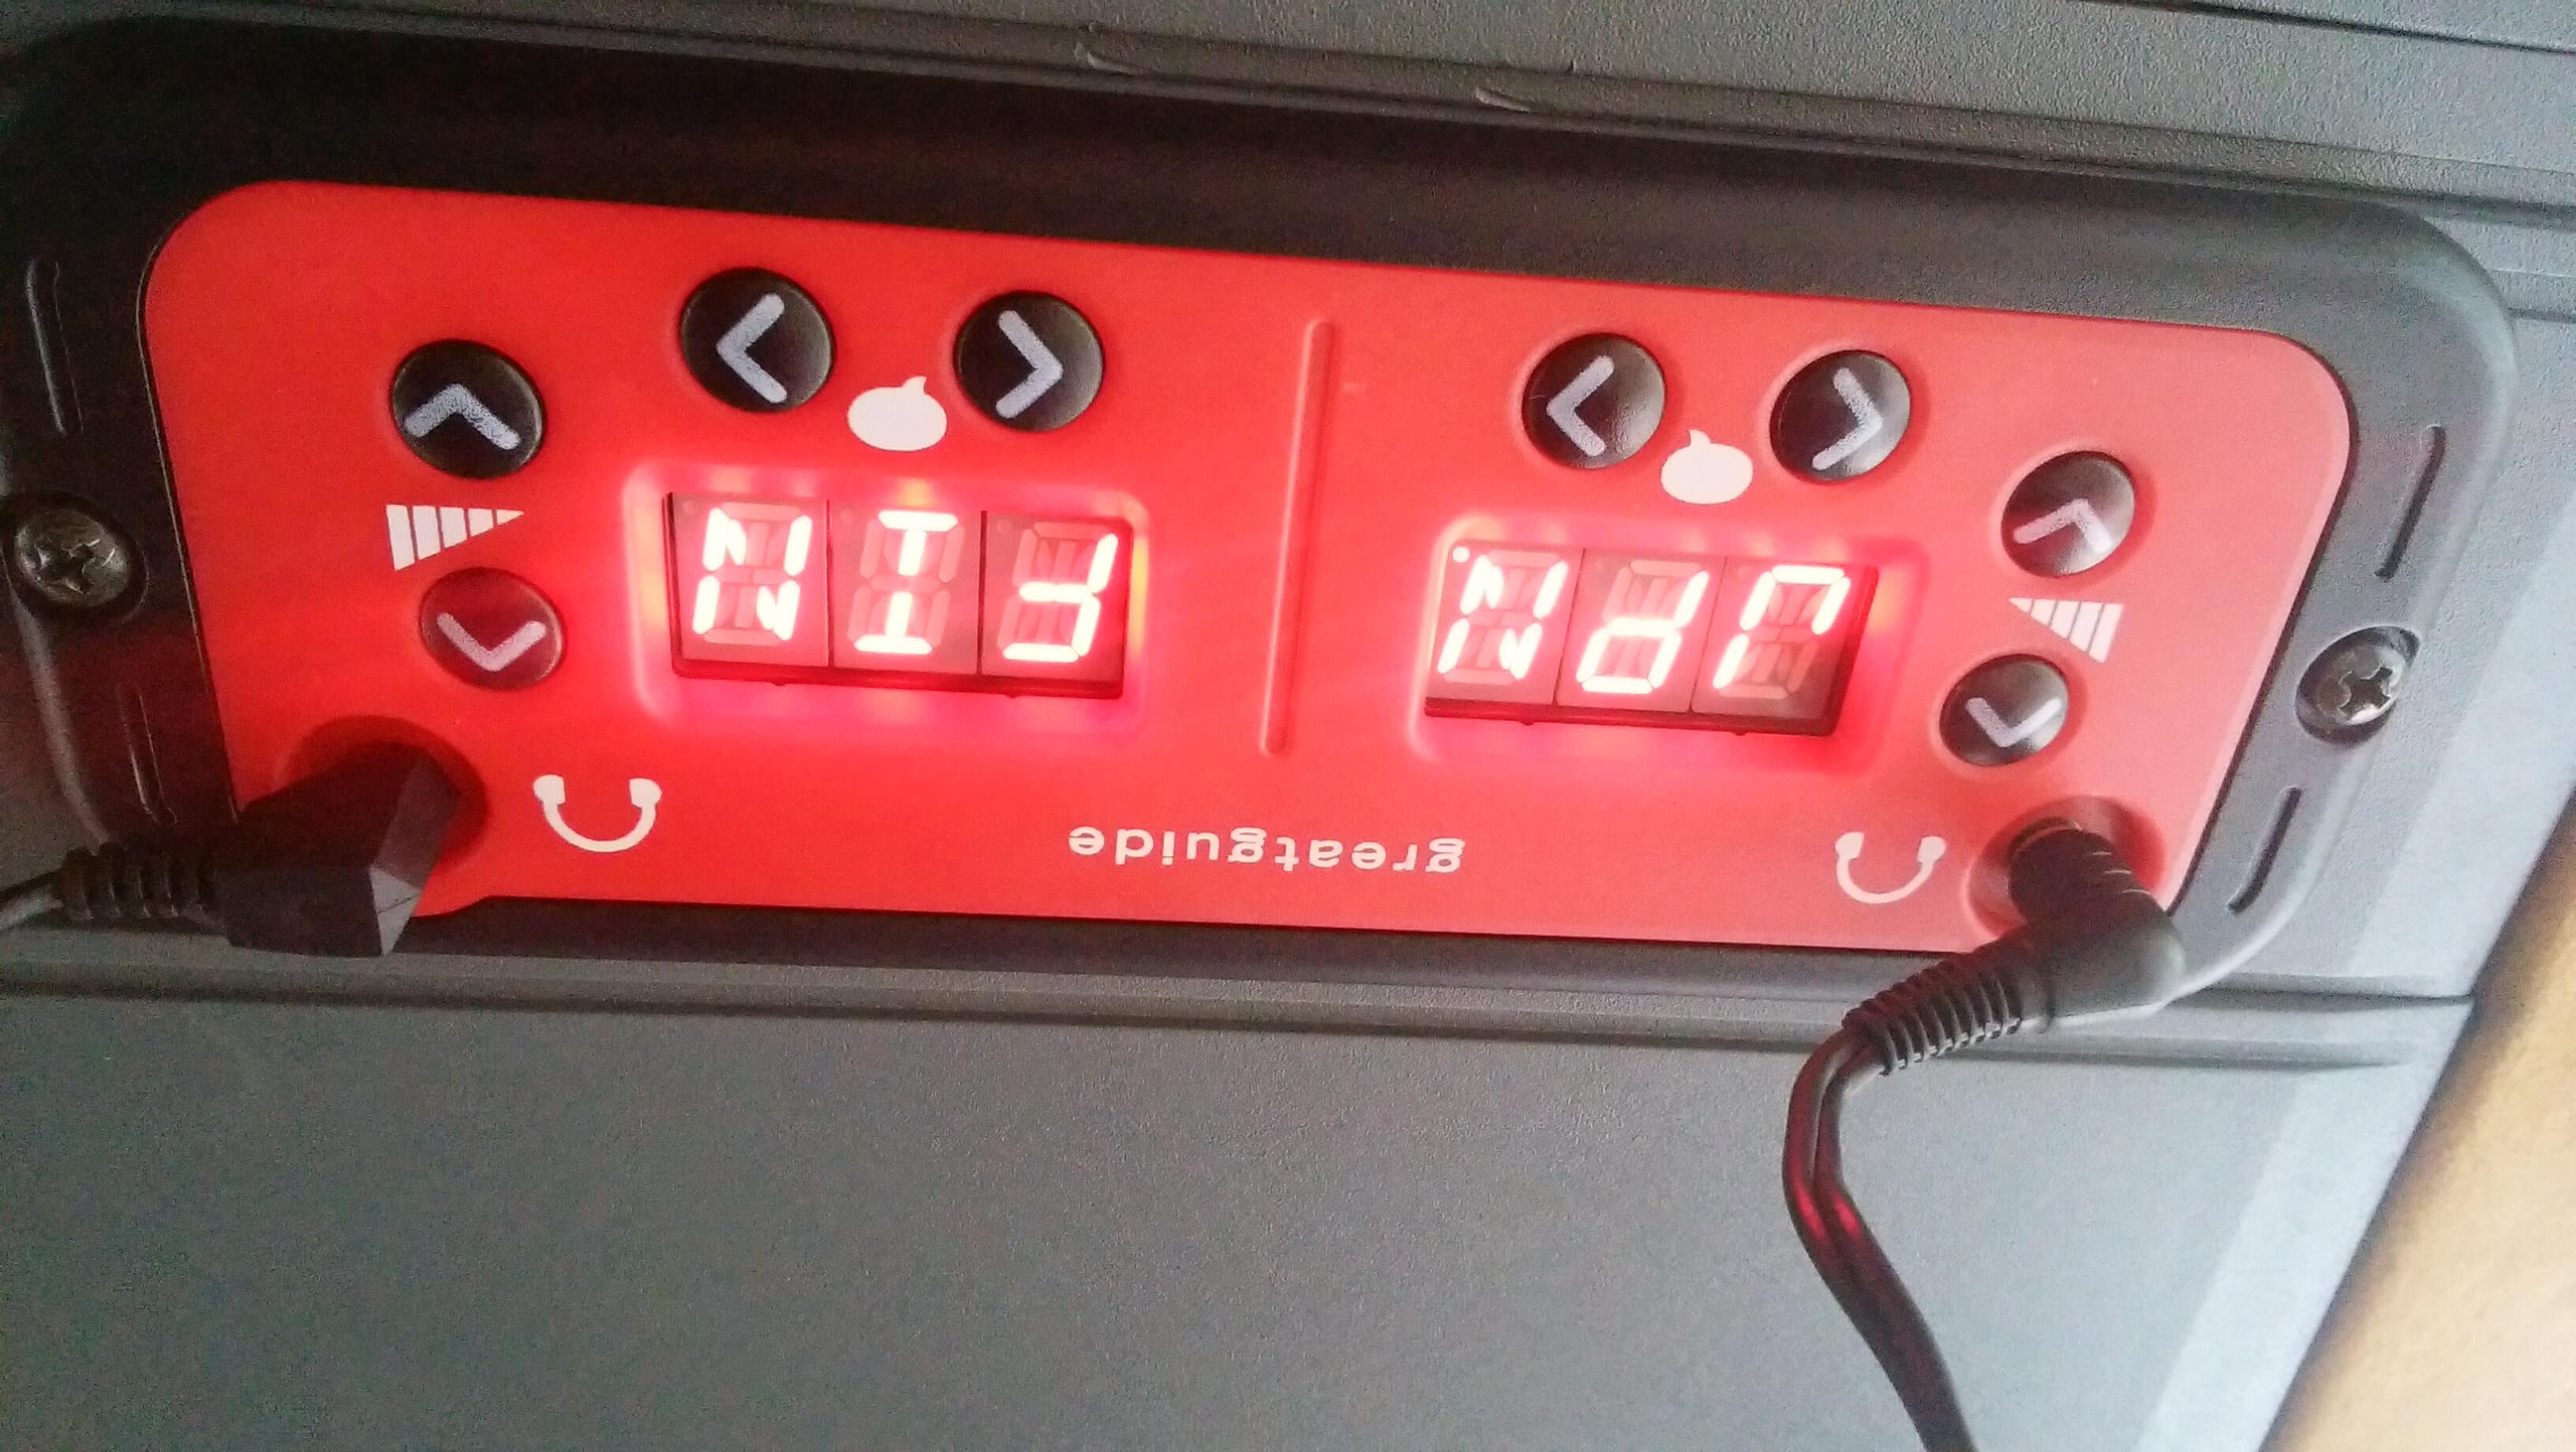 パノラマ観光バス車内の天井にあるオーディオガイド。言語を選択することができる